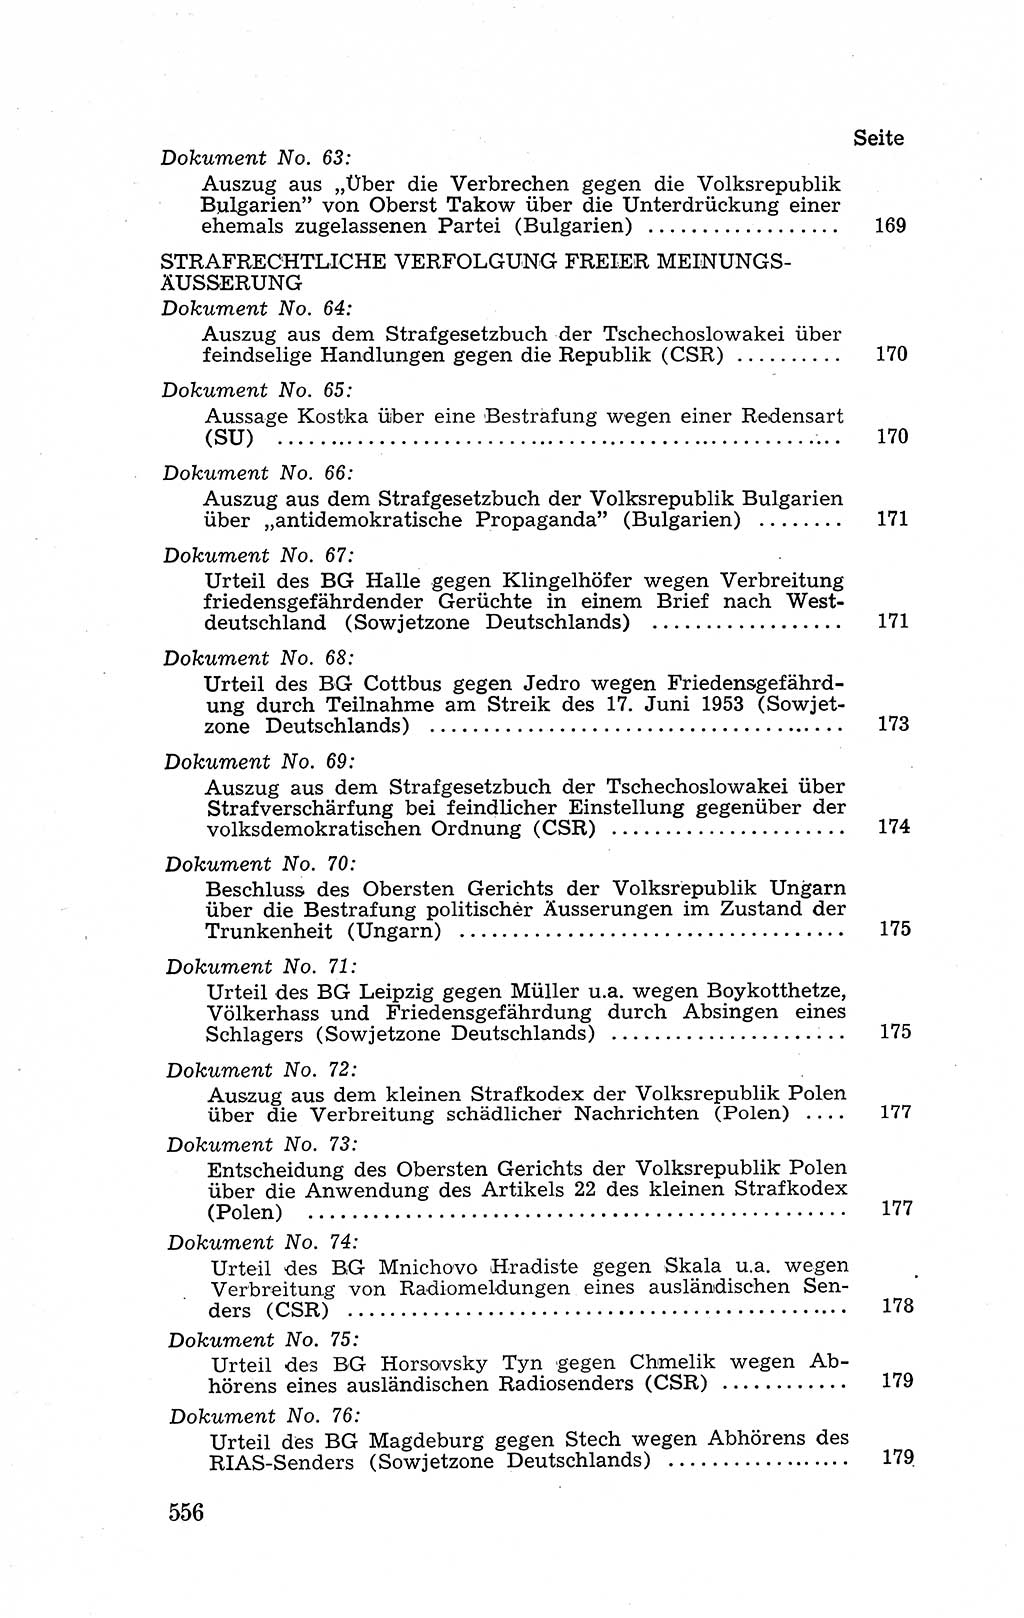 Recht in Fesseln, Dokumente, Internationale Juristen-Kommission [Bundesrepublik Deutschland (BRD)] 1955, Seite 556 (R. Dok. IJK BRD 1955, S. 556)